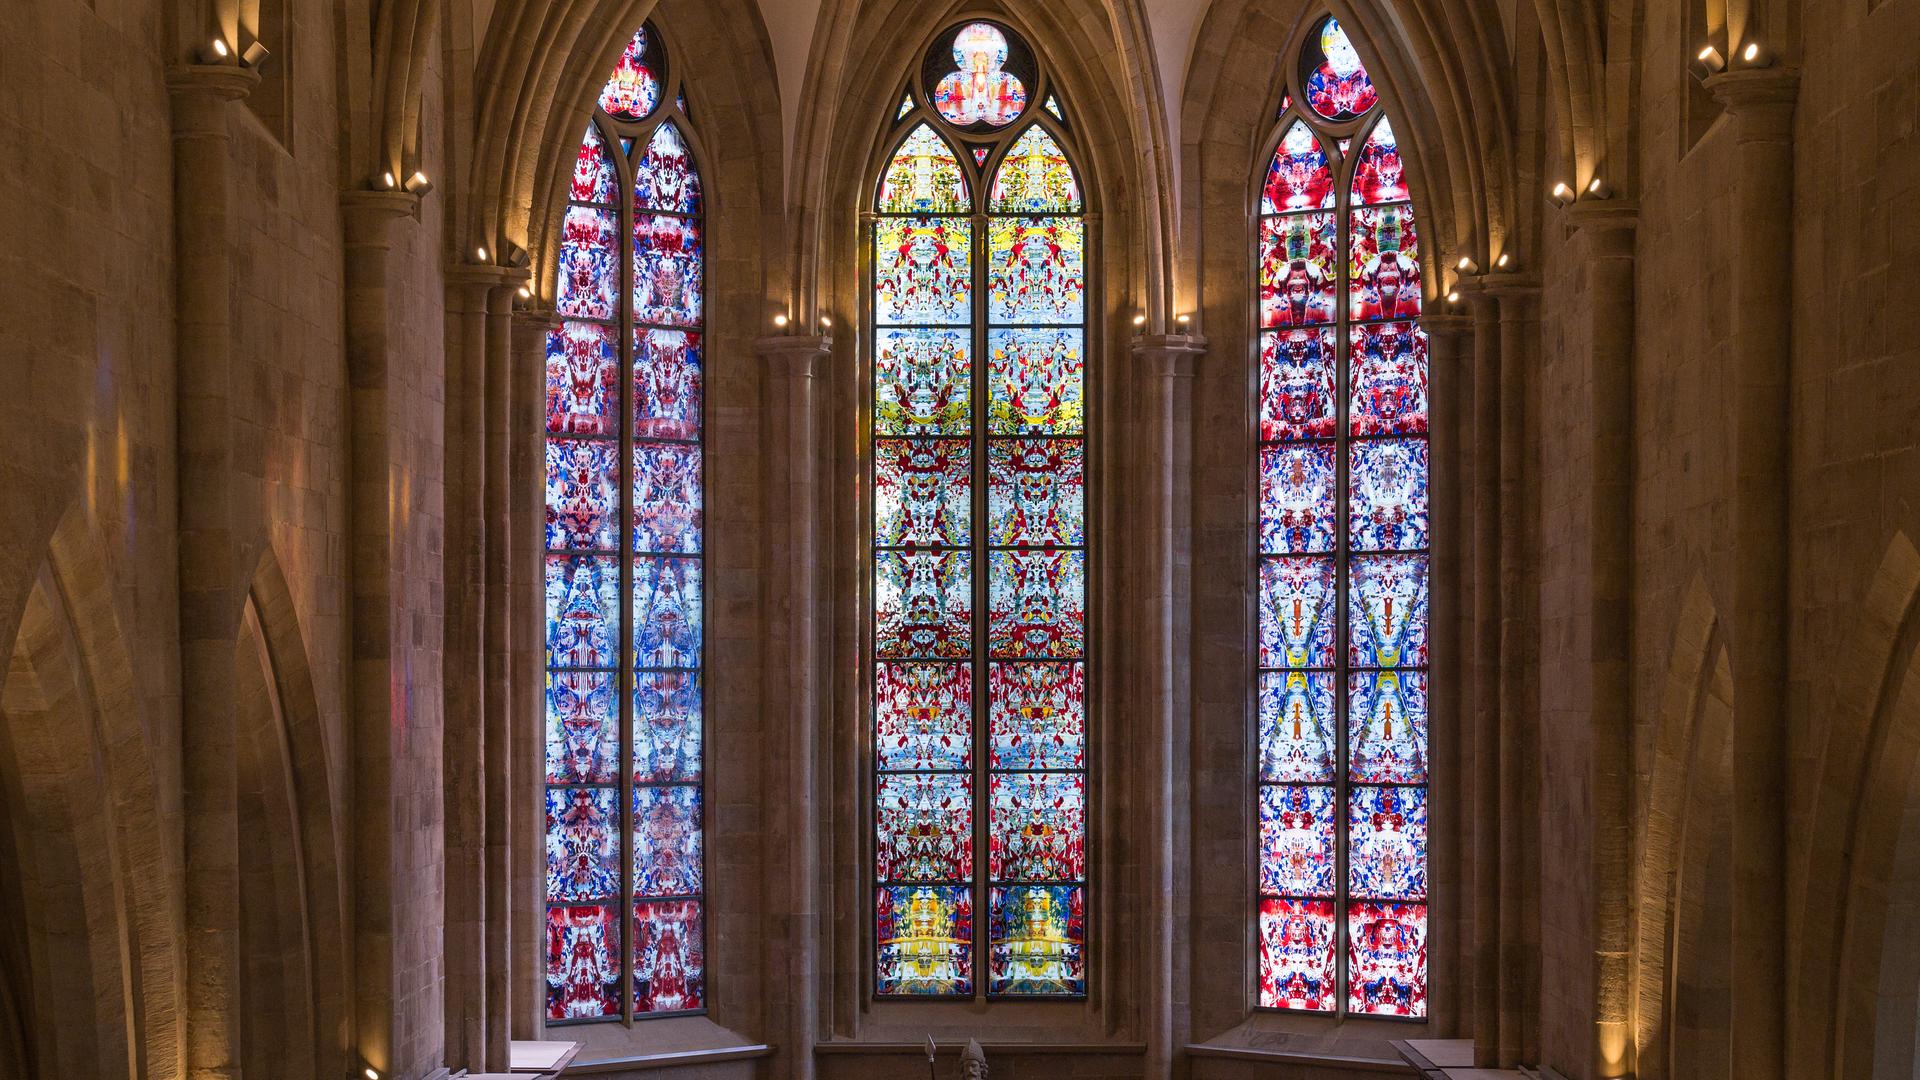 Kirchenfenster von Gerhard Richter in der Abteikirche Tholey